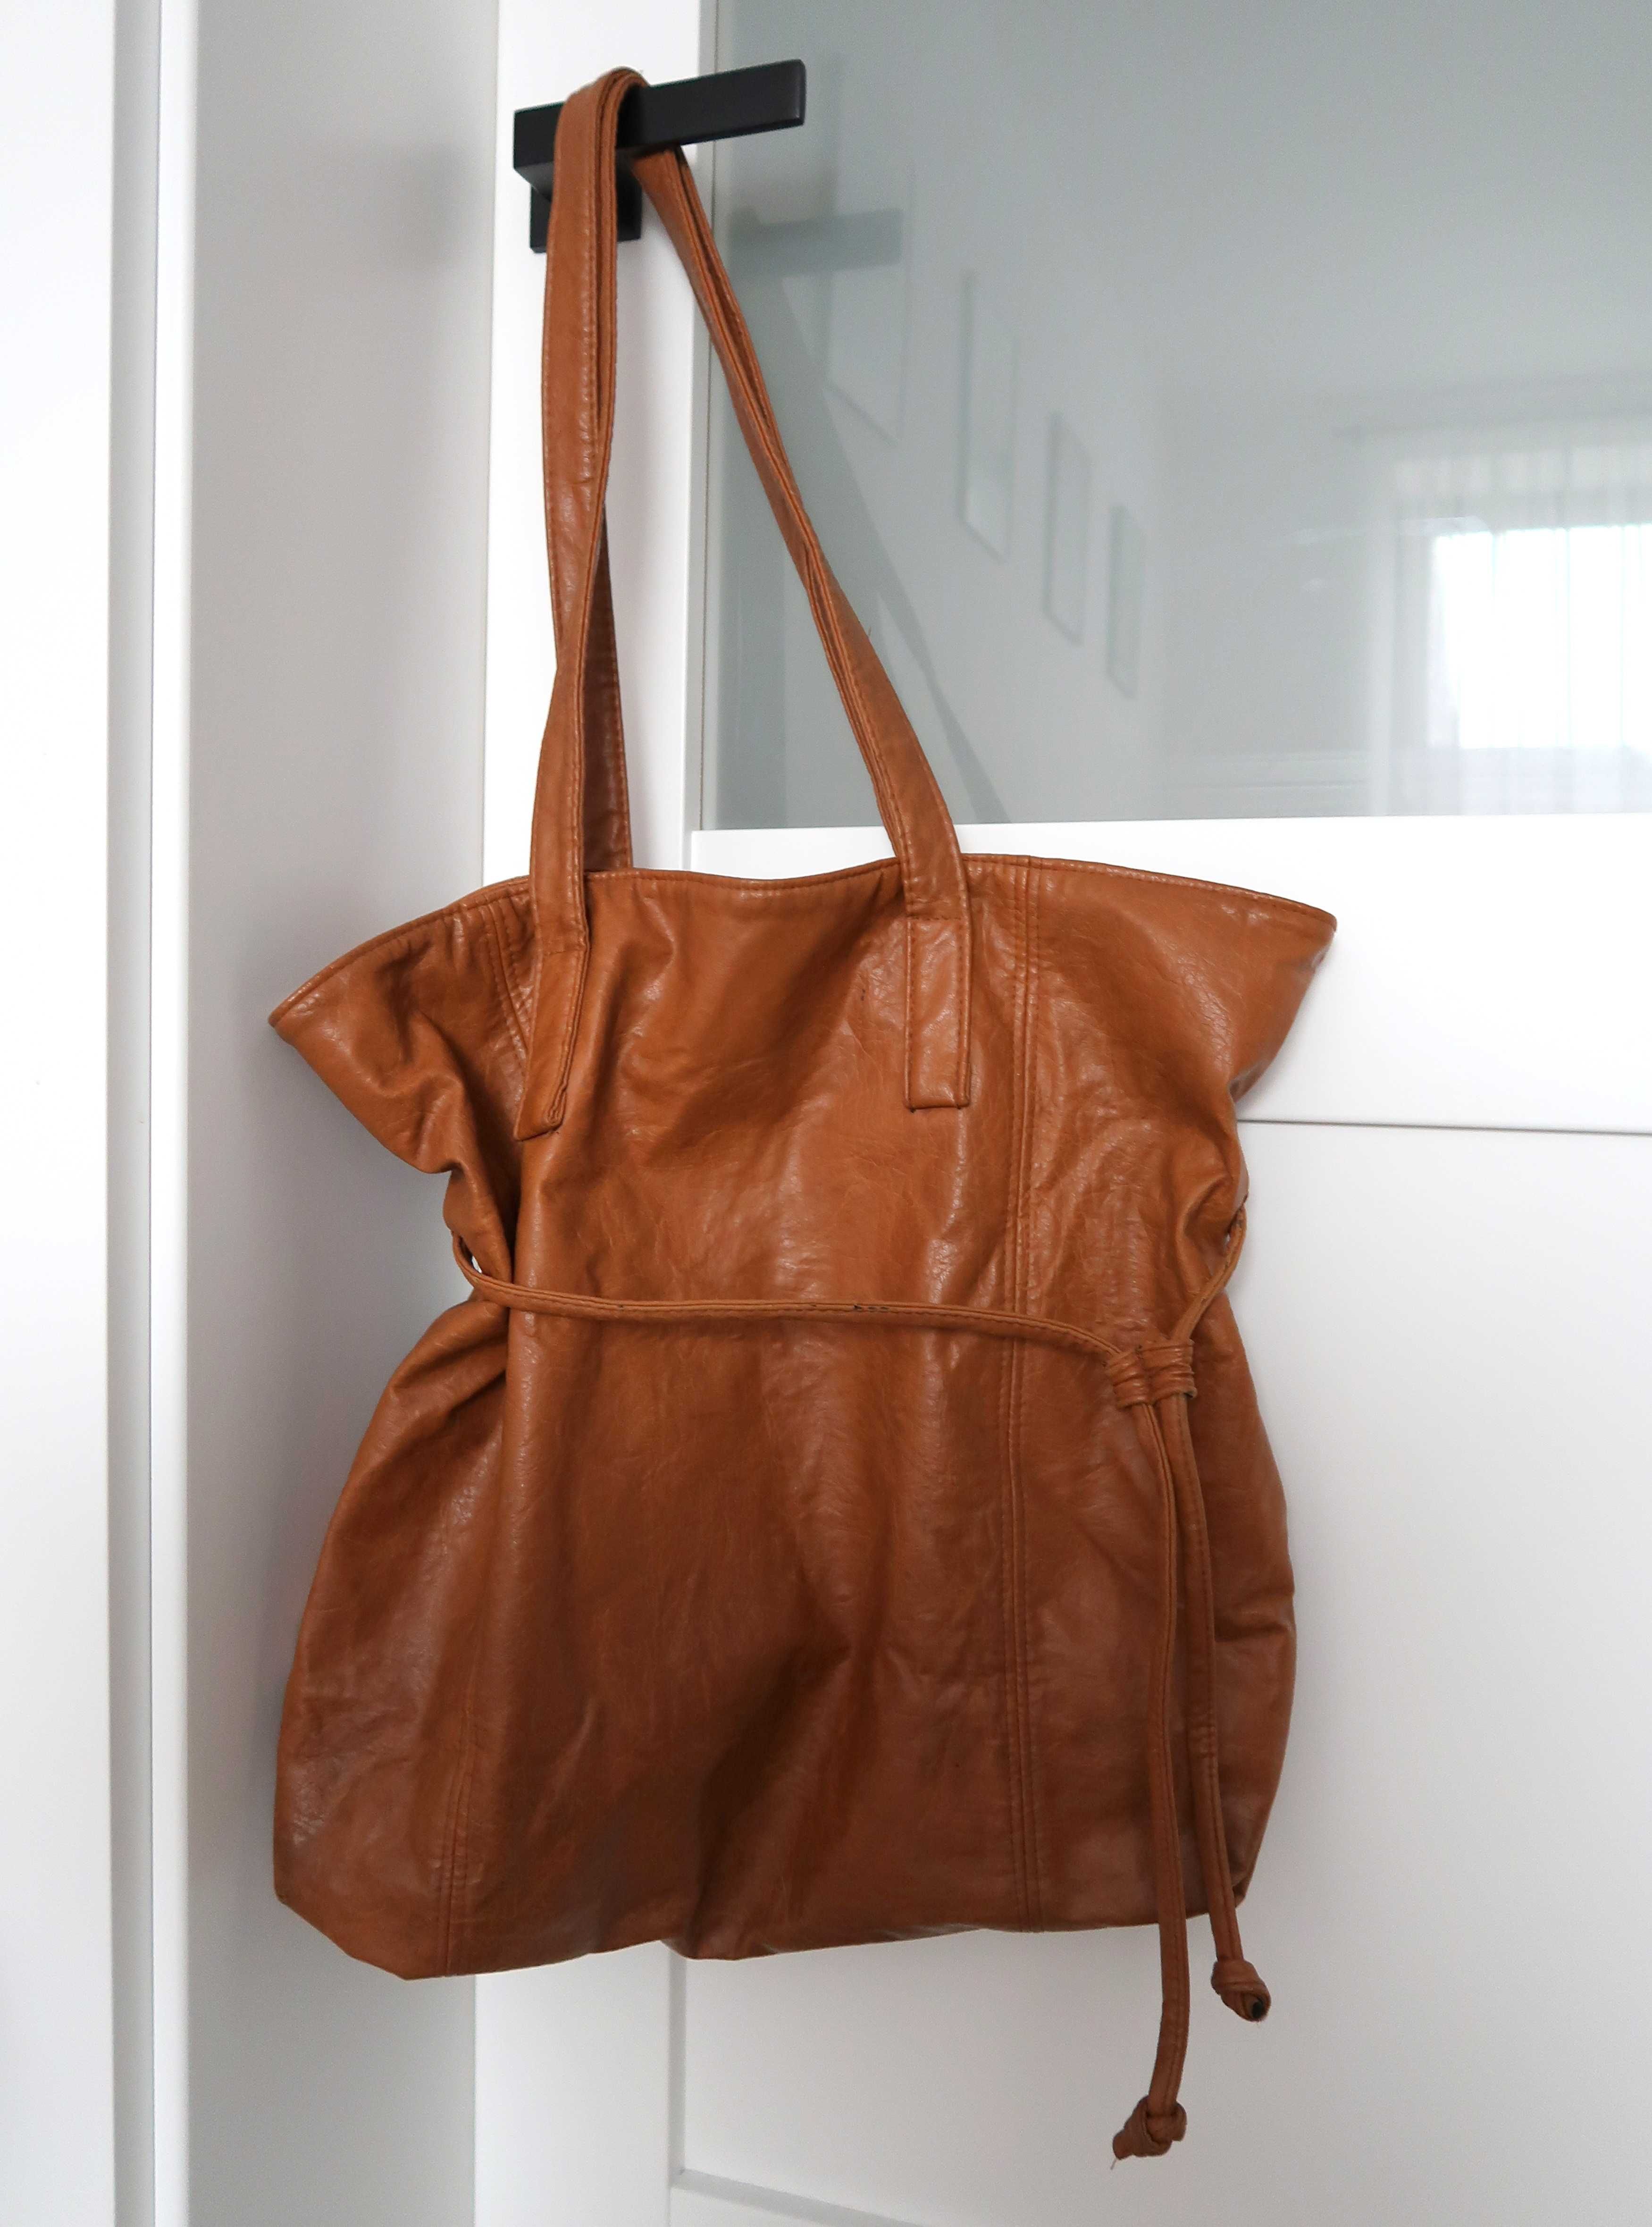 Skórzana duża torba brązowa klasyczna maxi bag